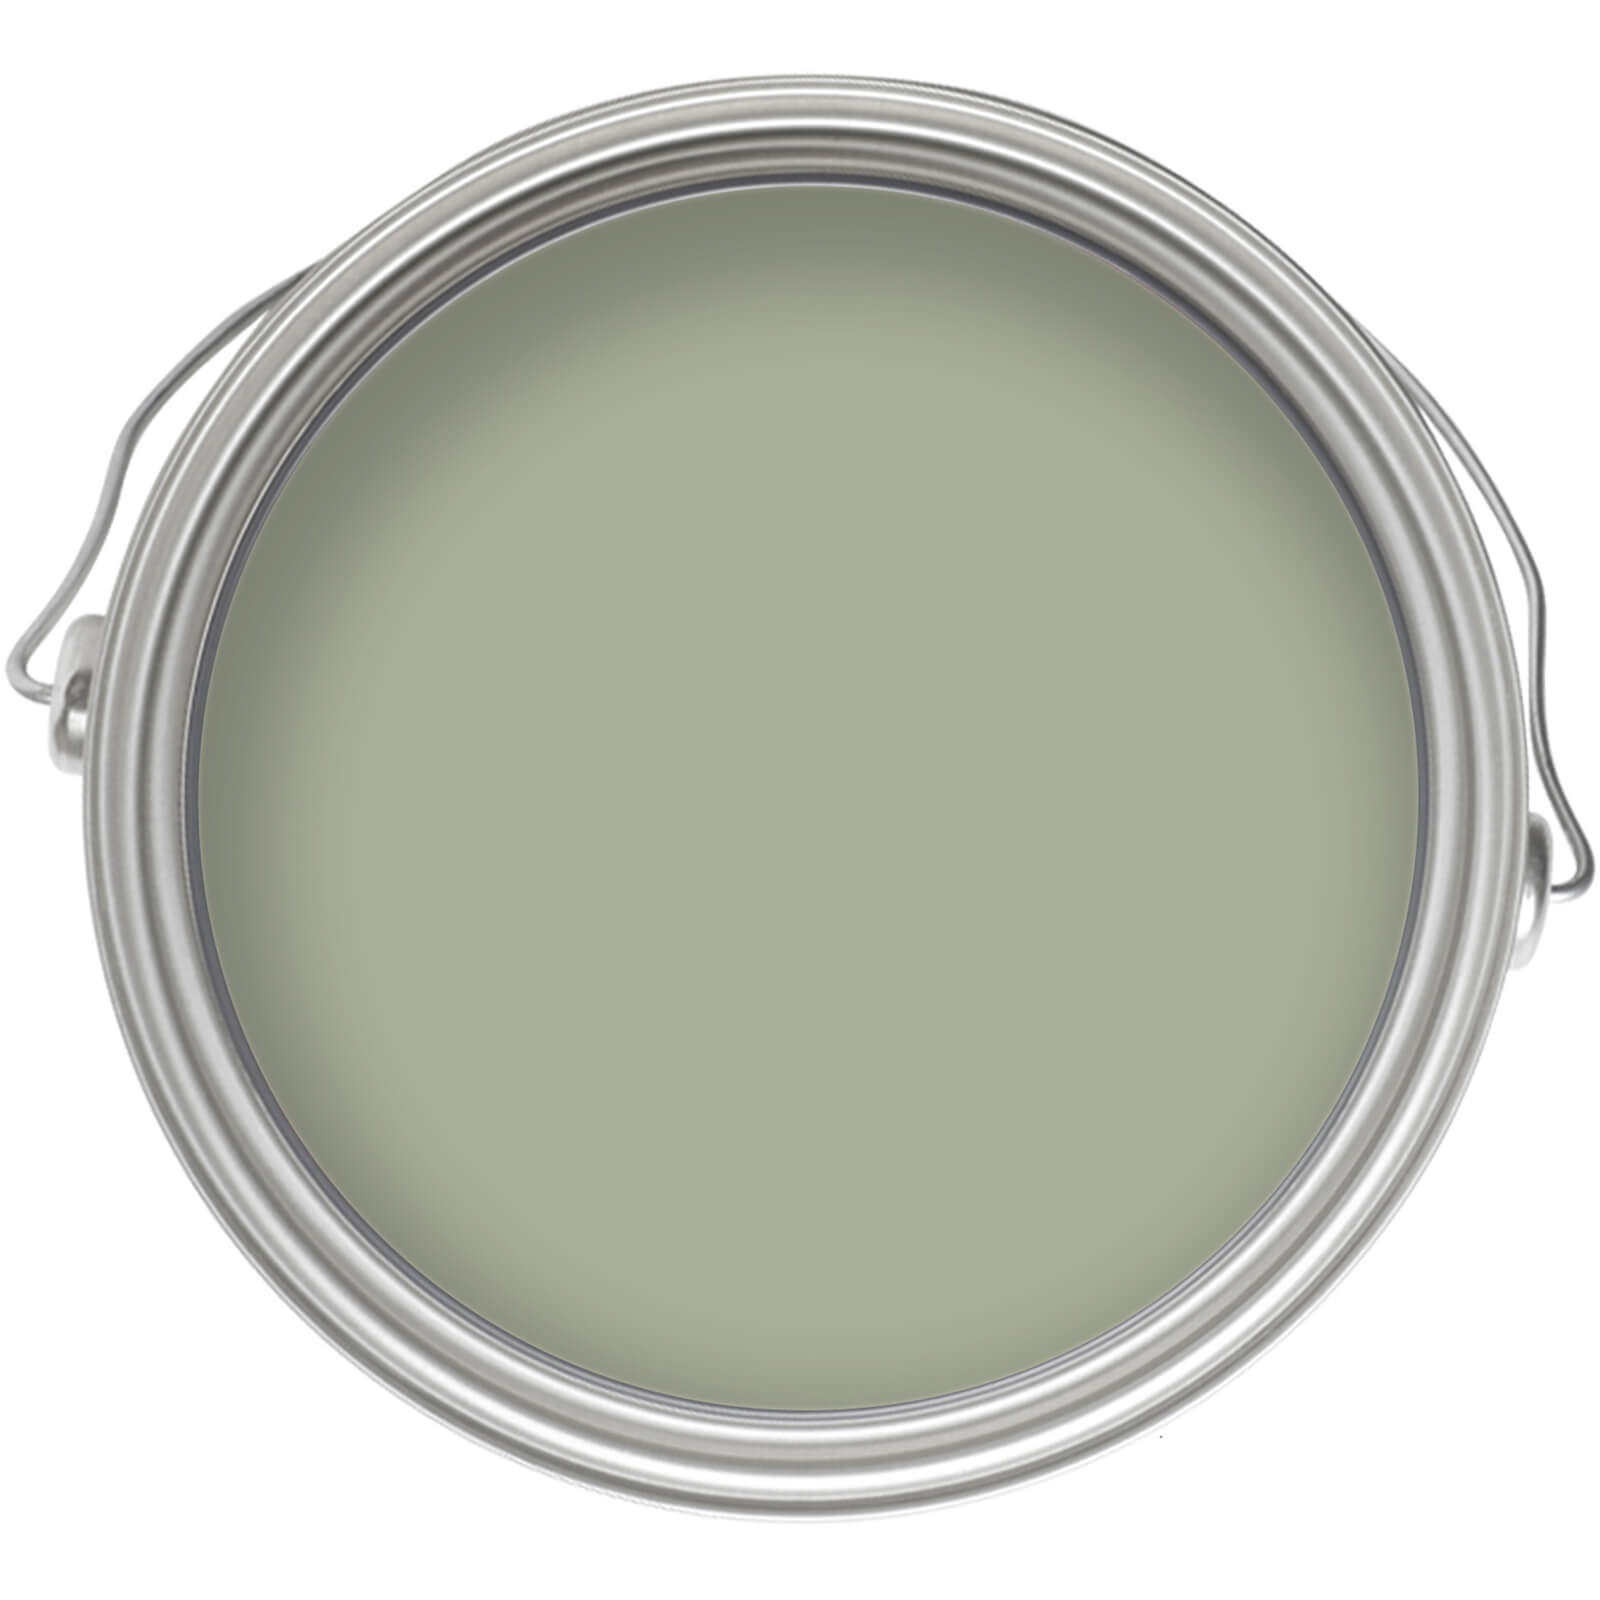 Homebase Tough & Durable Matt Paint Pale Olive - 2.5L